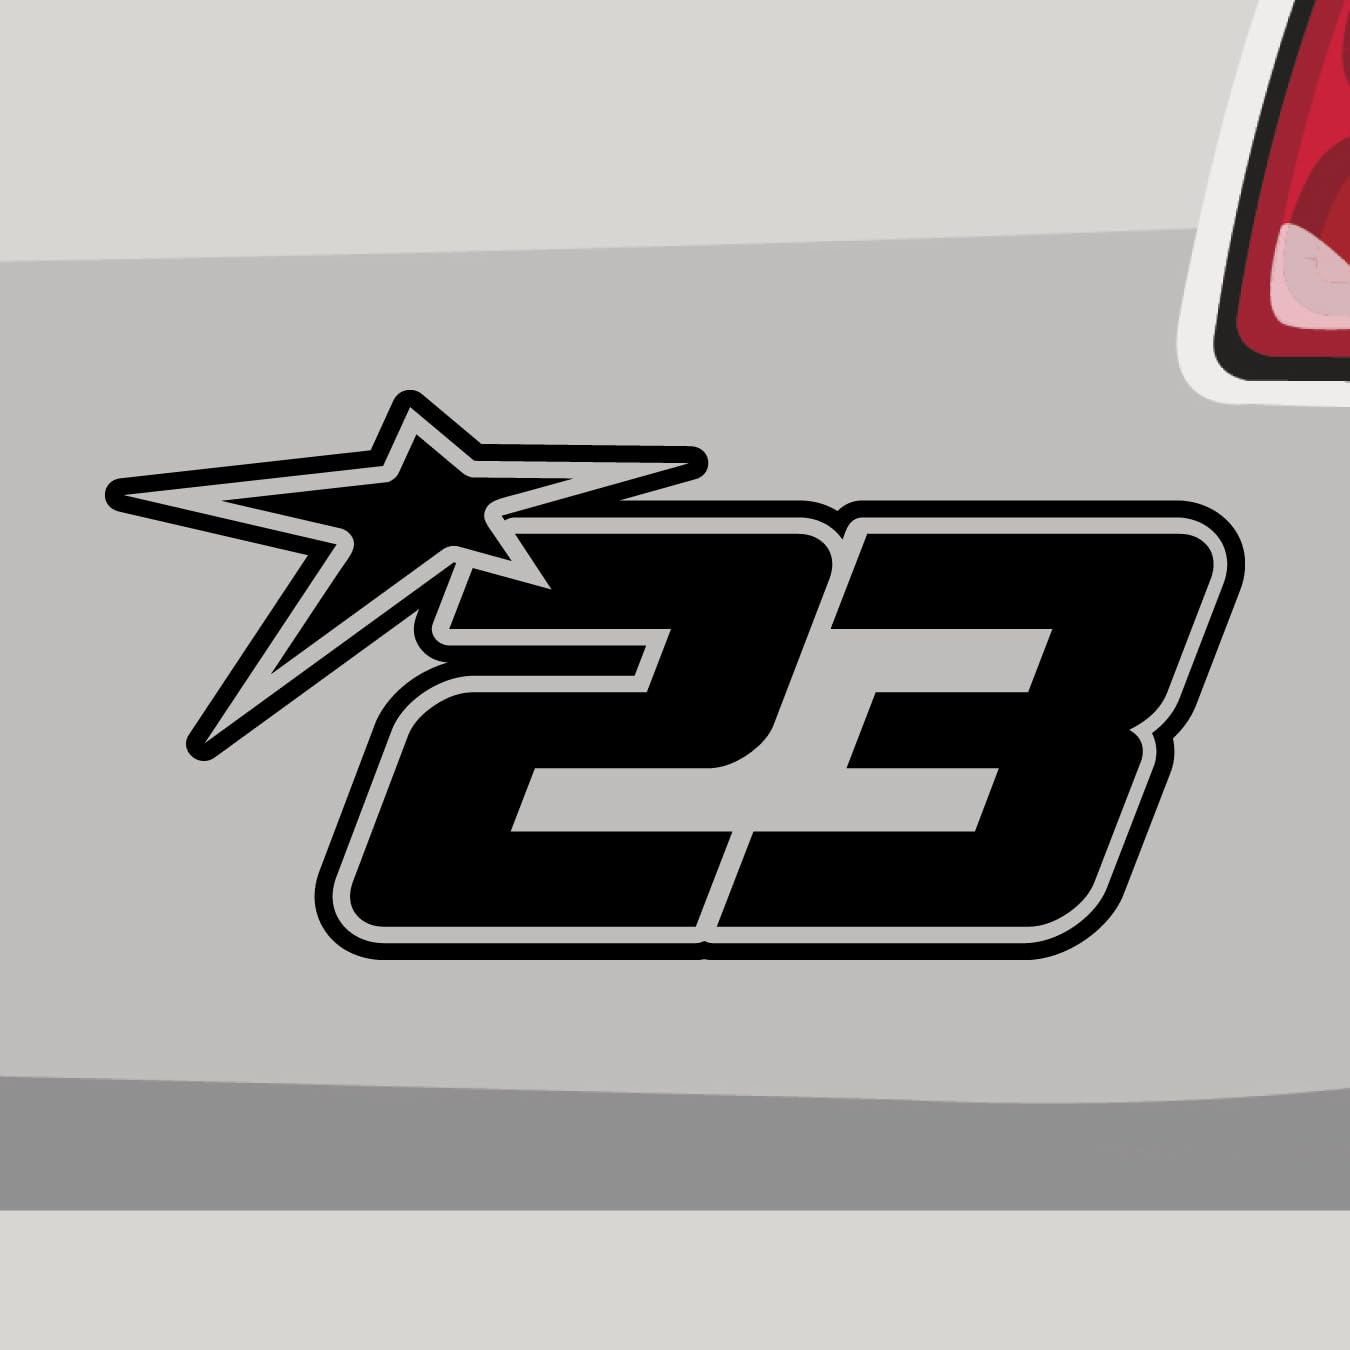 Stickerfreaks Startnummer 23 Aufkleber Race Track Sticker Star Stern Auto Bike Decal Vinyl JDM Aufkleber Größe: 46x23cm (XXL) | Farbe: 70-schwarz | Racenumber Sticker Kleber Deko Tuning Zahl von Stickerfreaks